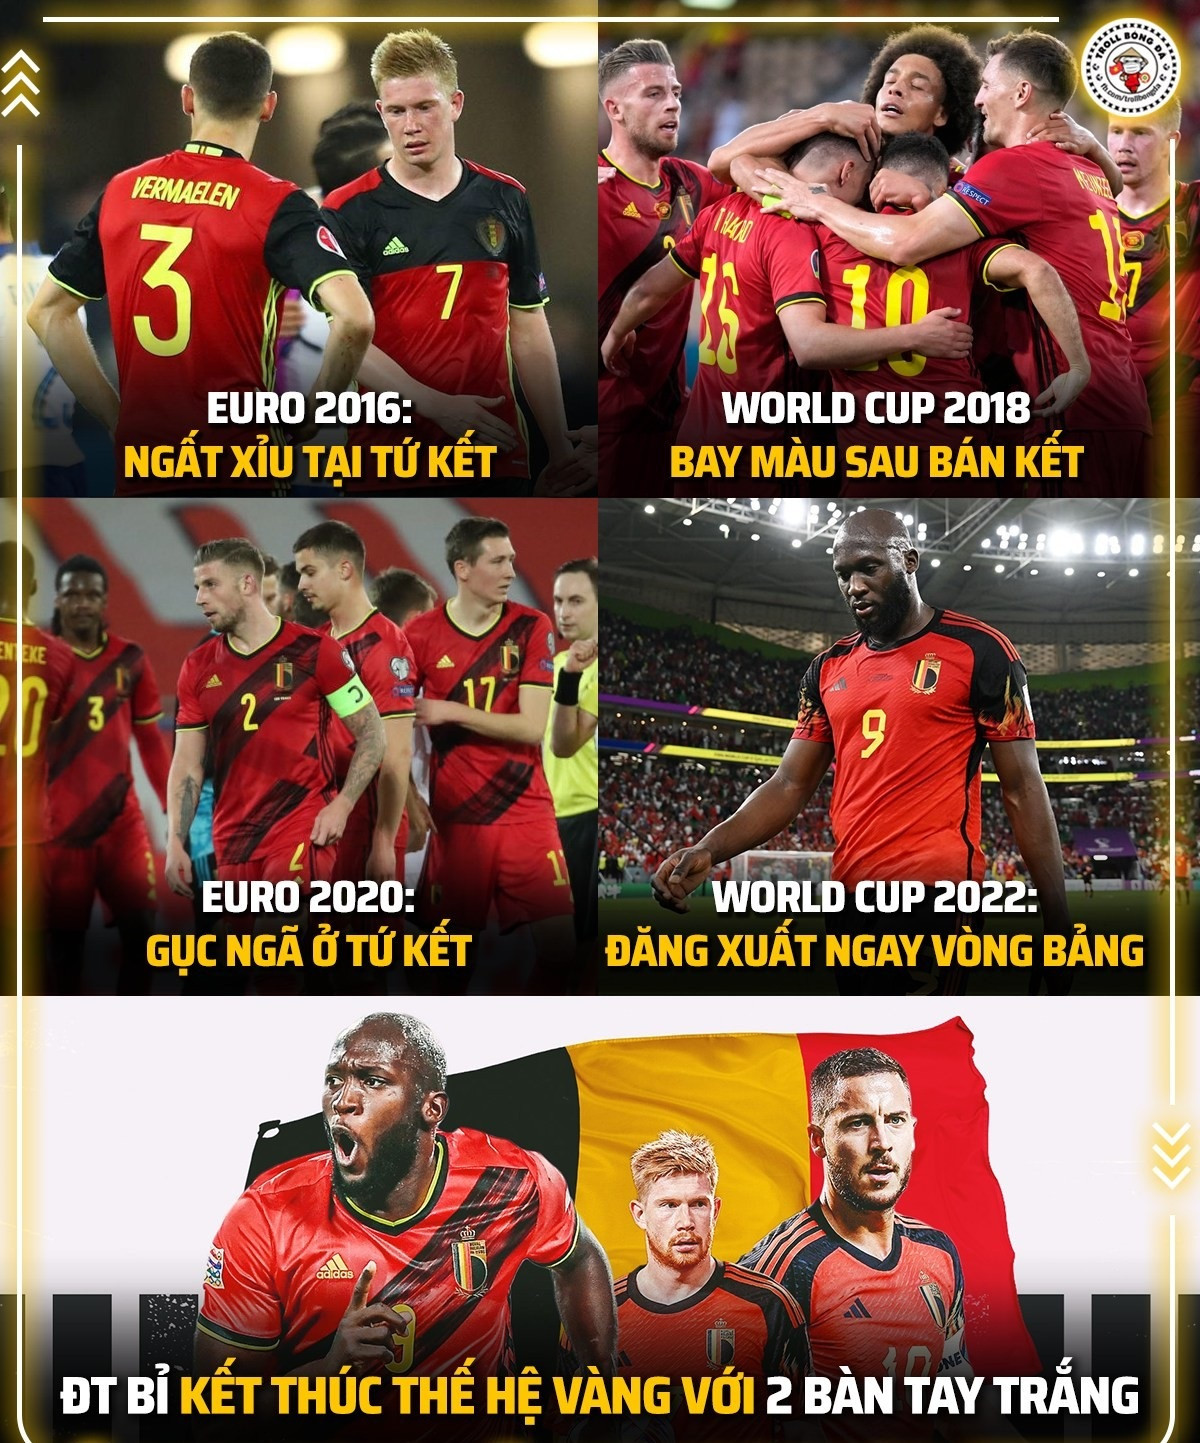 Đội tuyển Bỉ bước vào World Cup 2022 với tư cách đội đứng thứ 2 trong bảng xếp hạng Fifa, nhưng lại ra về ngay từ vòng bảng (Ảnh: Troll bóng đá).